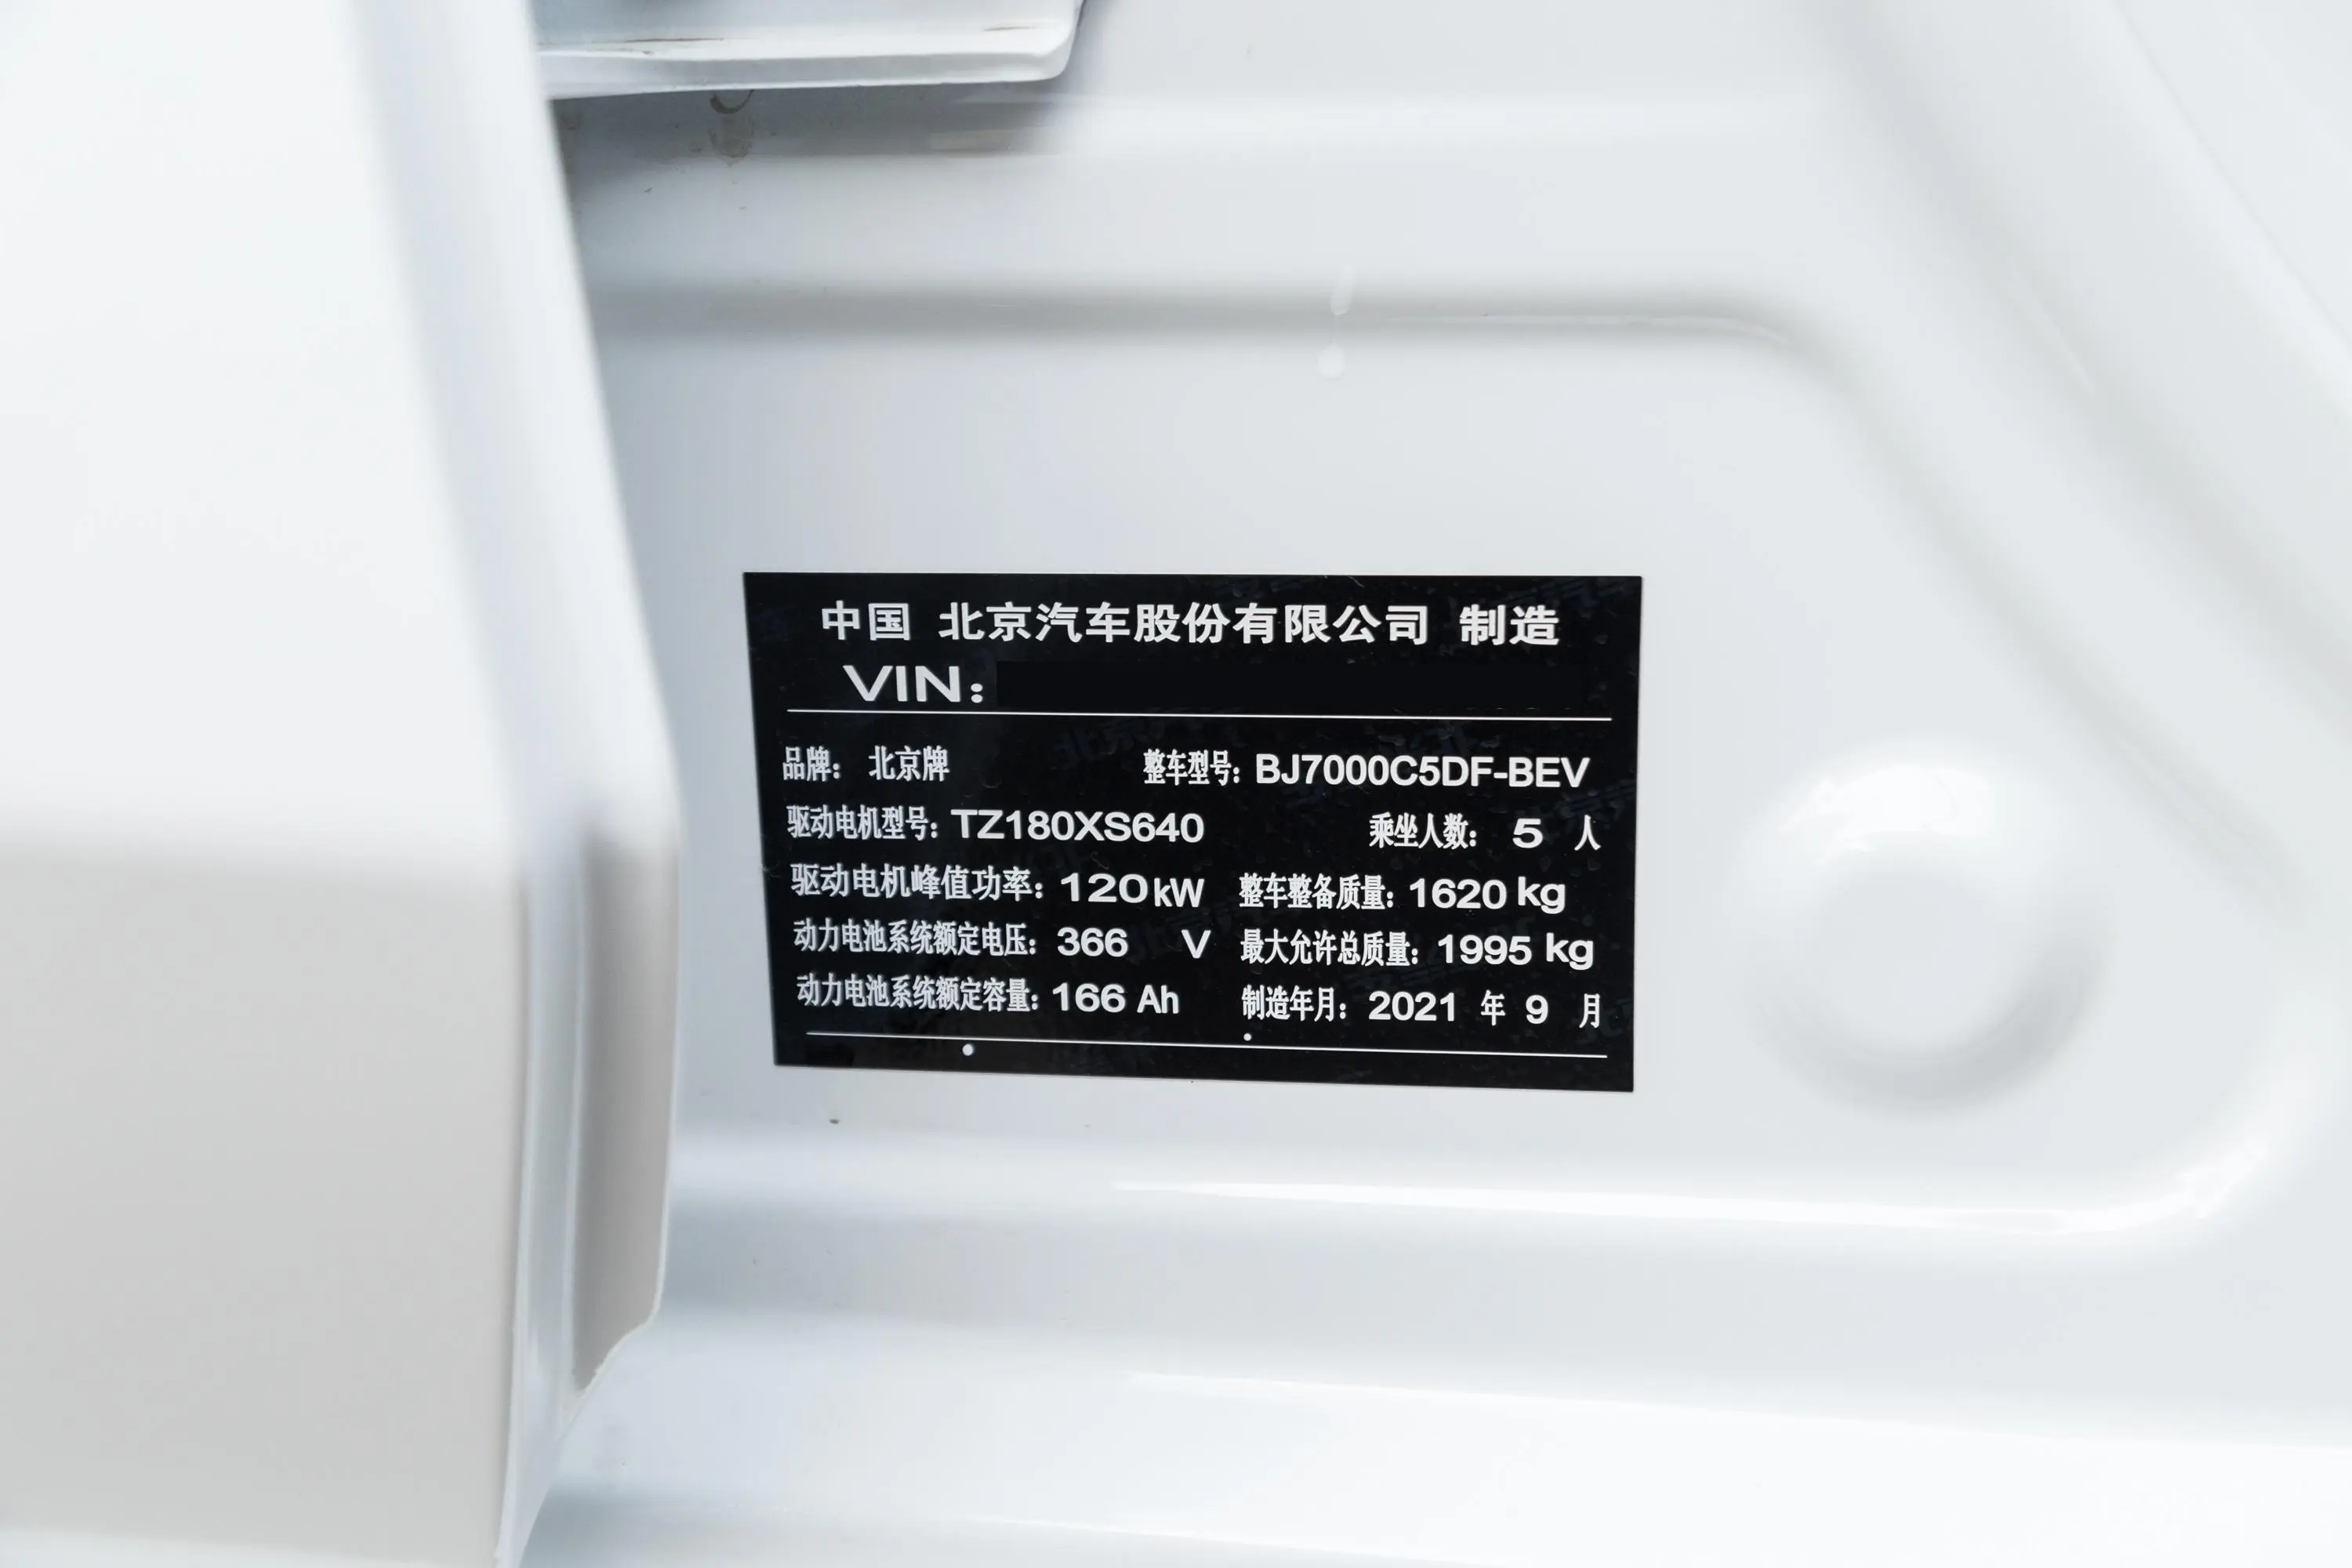 北京EU5 PLUSR600 优享版车辆信息铭牌